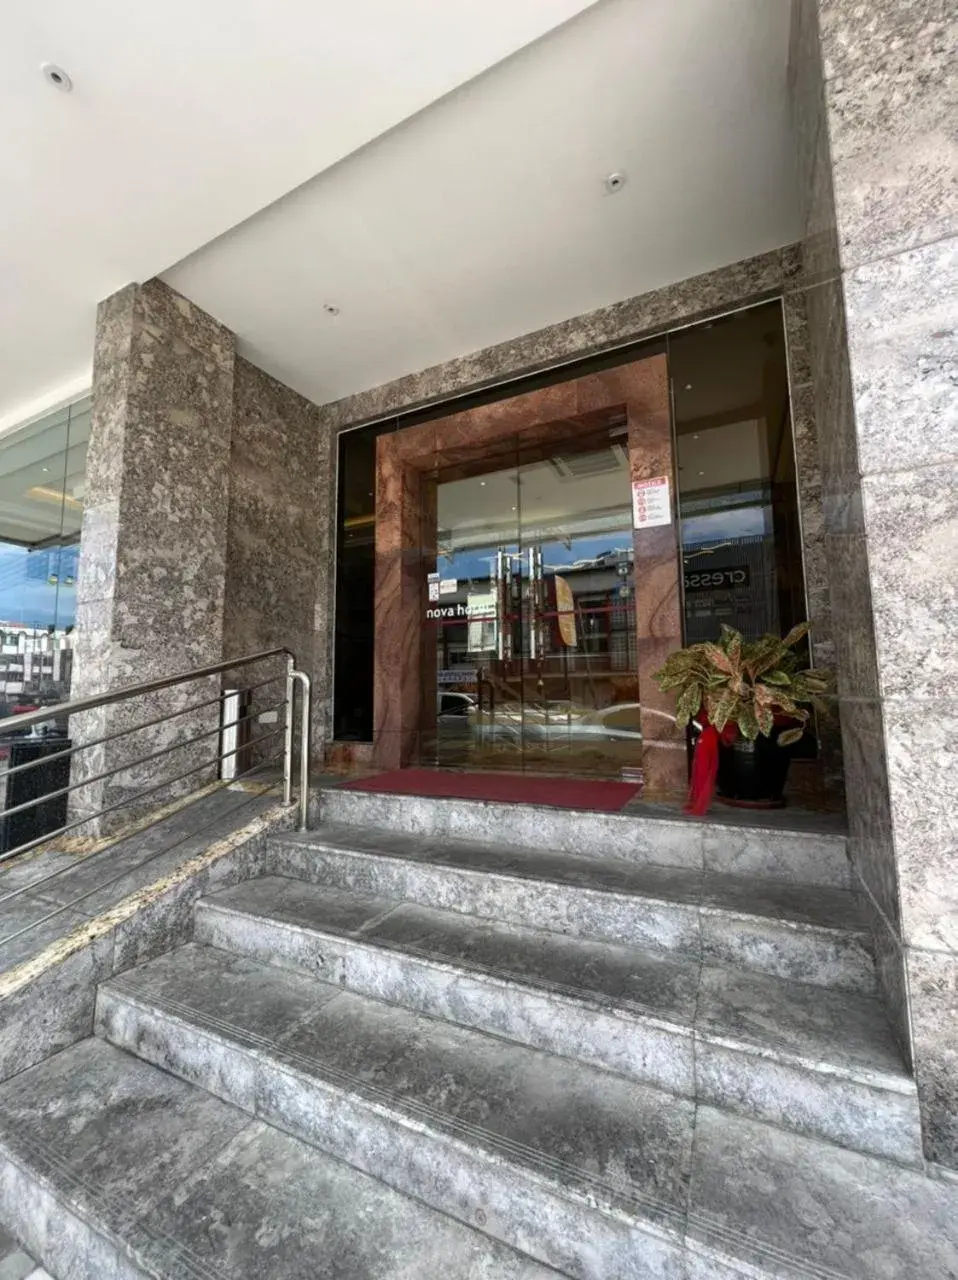 Facade/entrance in Nova Hotel